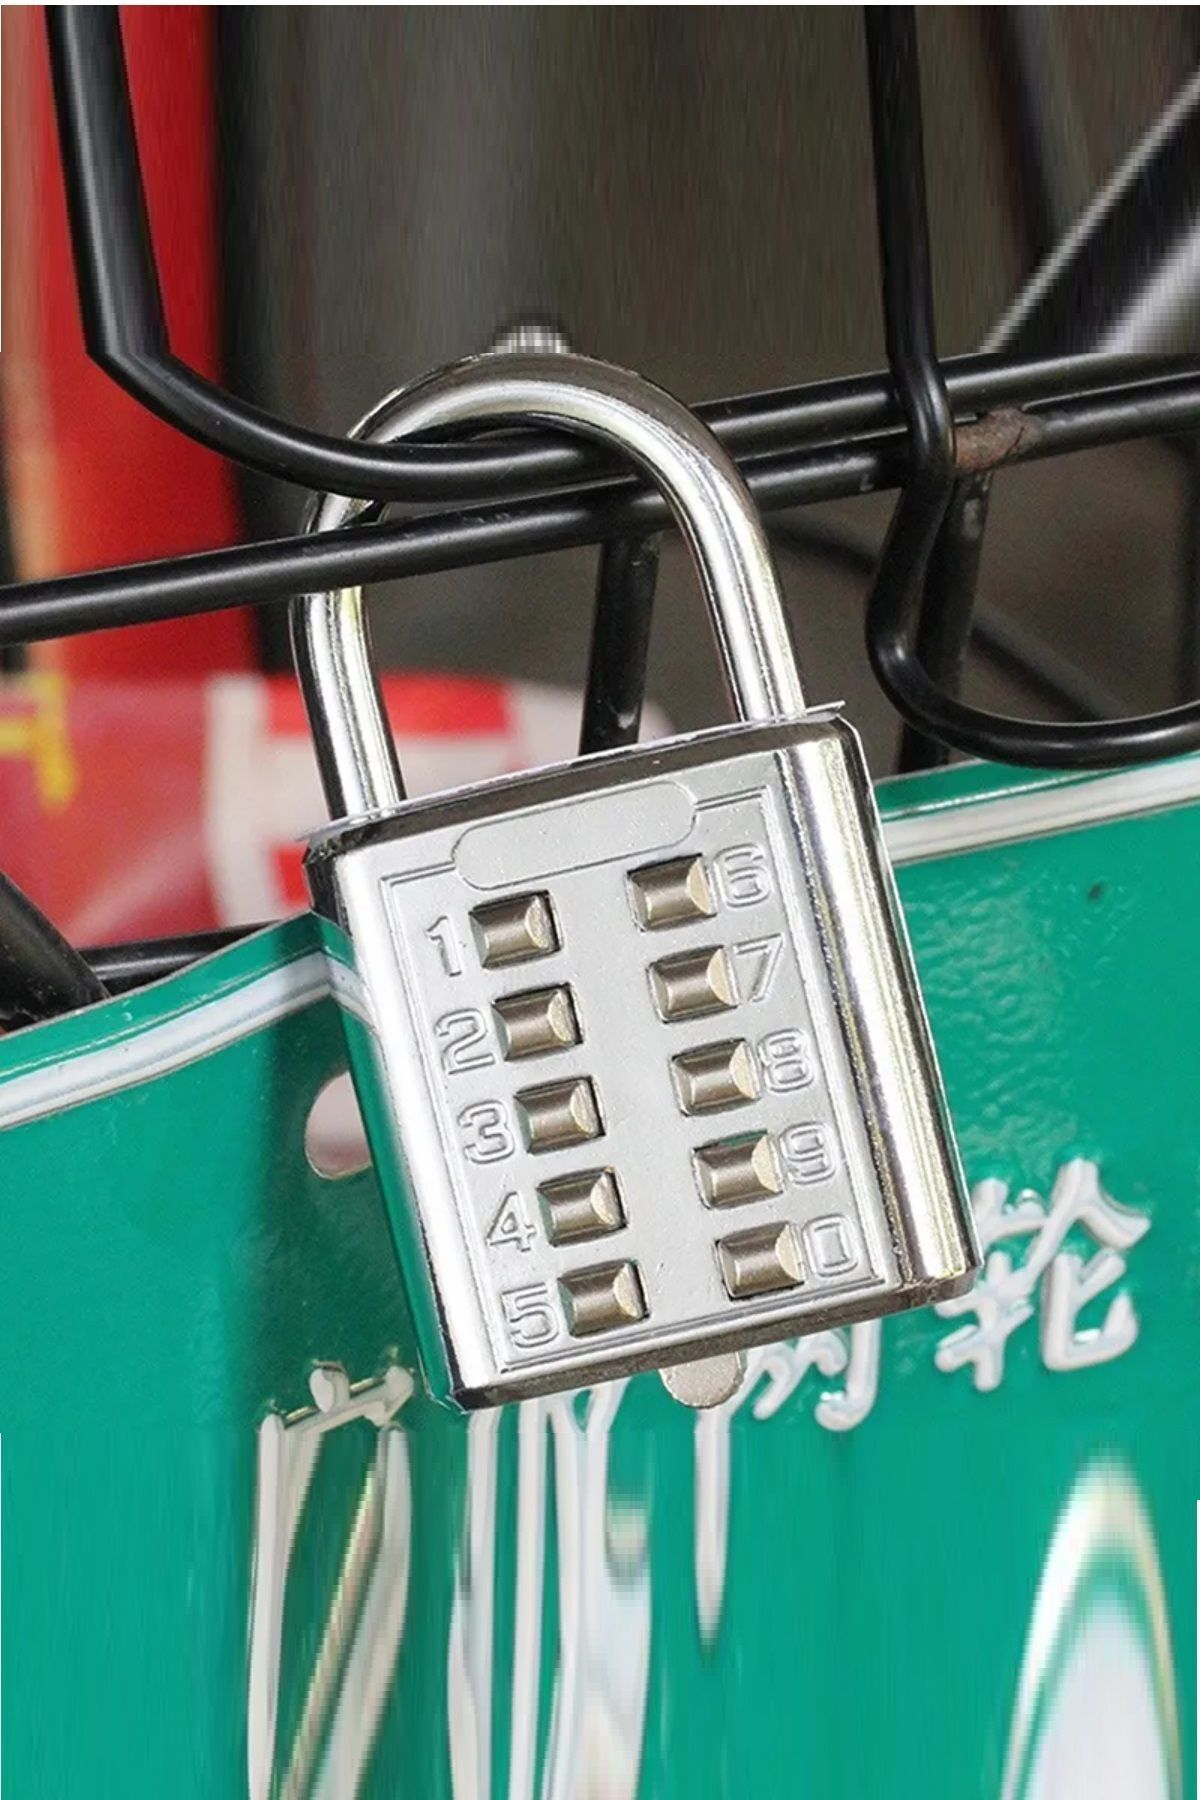 Genel Markalar 8 Şifreli Akıllı Kilit Basmalı Şifreli Kilit Ofis Dolap Bagaj Valiz Çanta Güvenlik Kilit XLK412